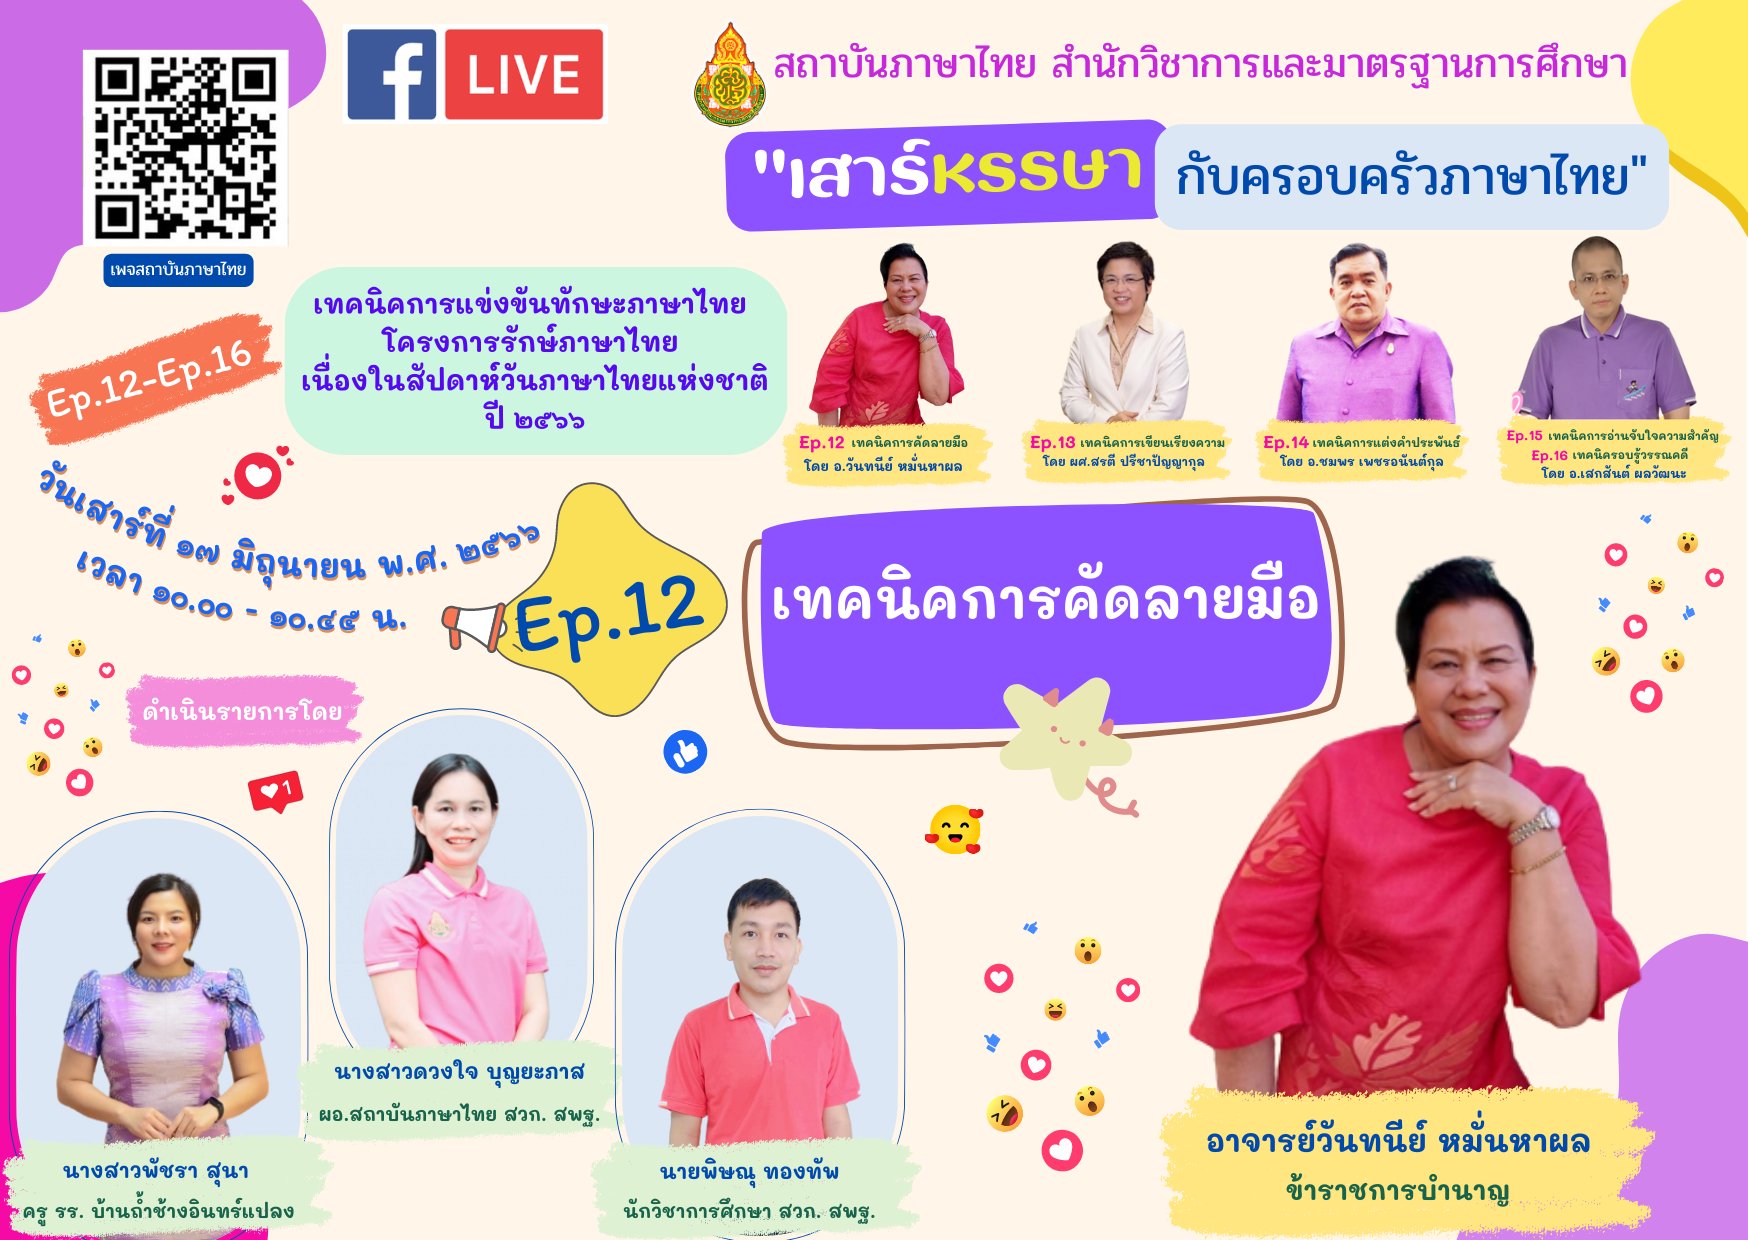 อบรมออนไลน์ 2566 เรื่อง เทคนิคการแข่งขัน ทักษะ ภาษาไทย โครงการรักษ์ภาษาไทย ep. 12 เทคนิคการคัดลายมือ 